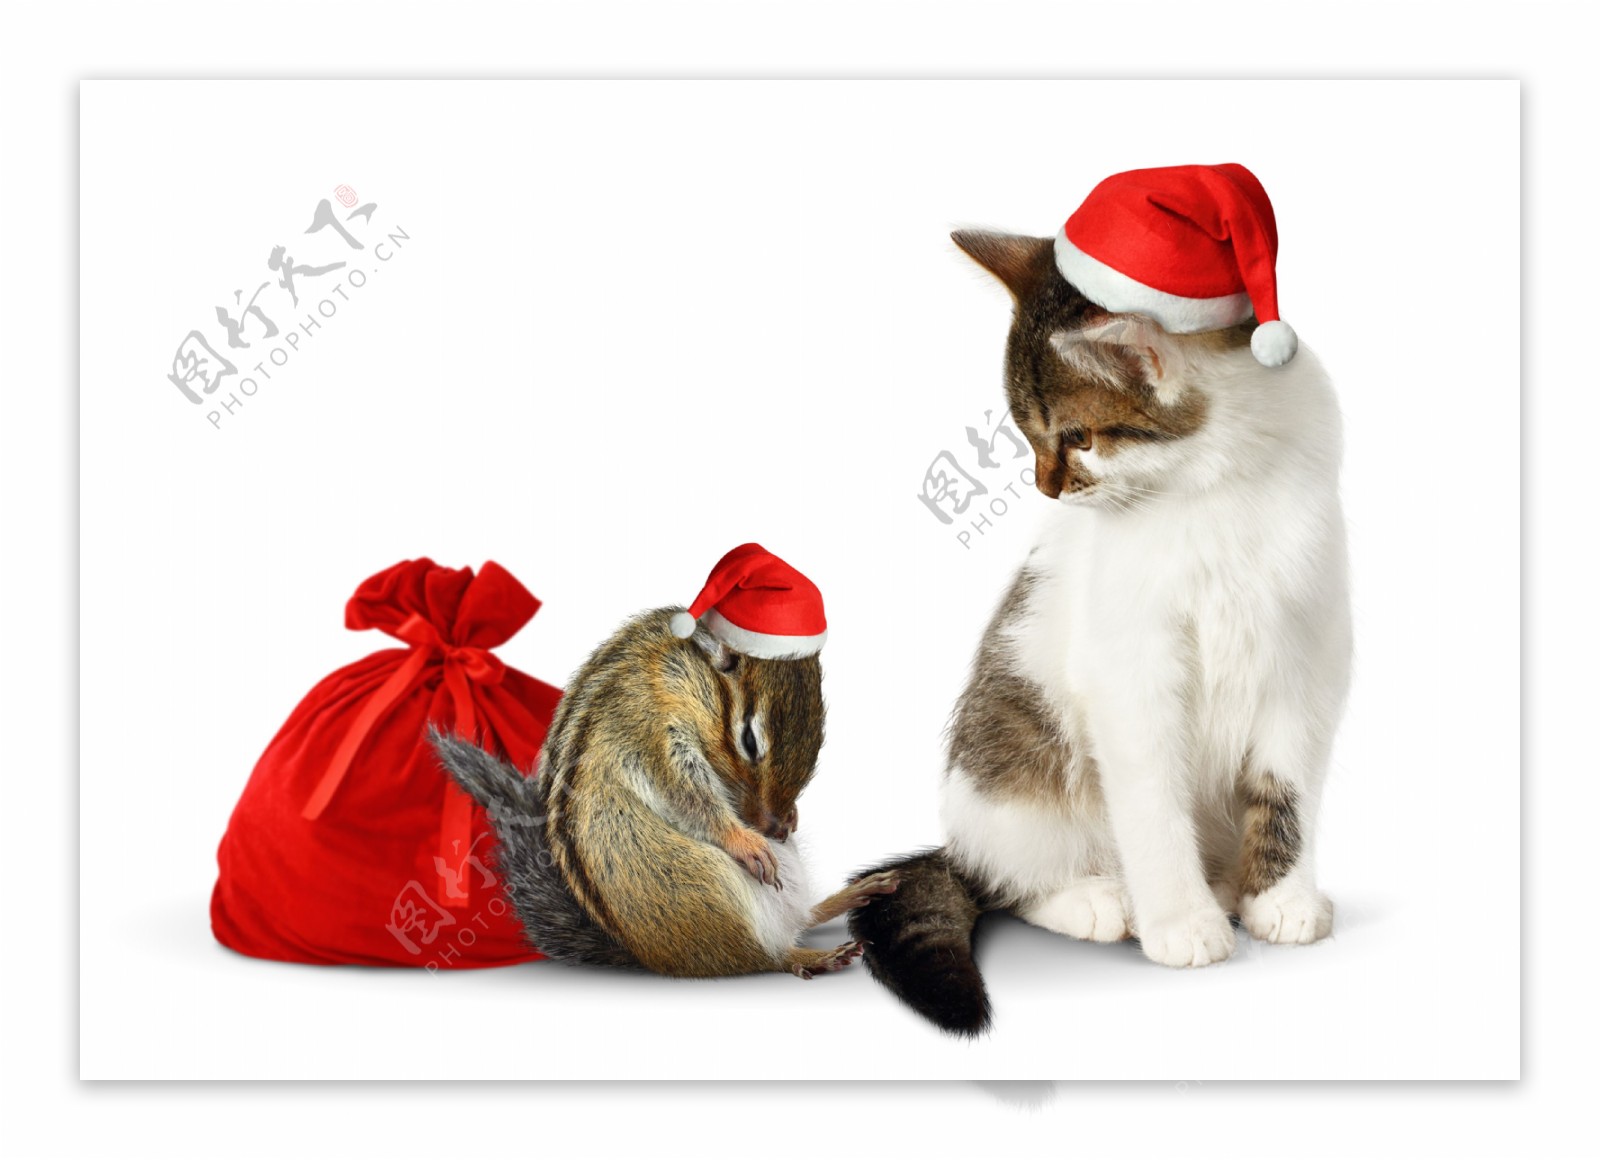 有趣的圣诞节小猫和老鼠图片